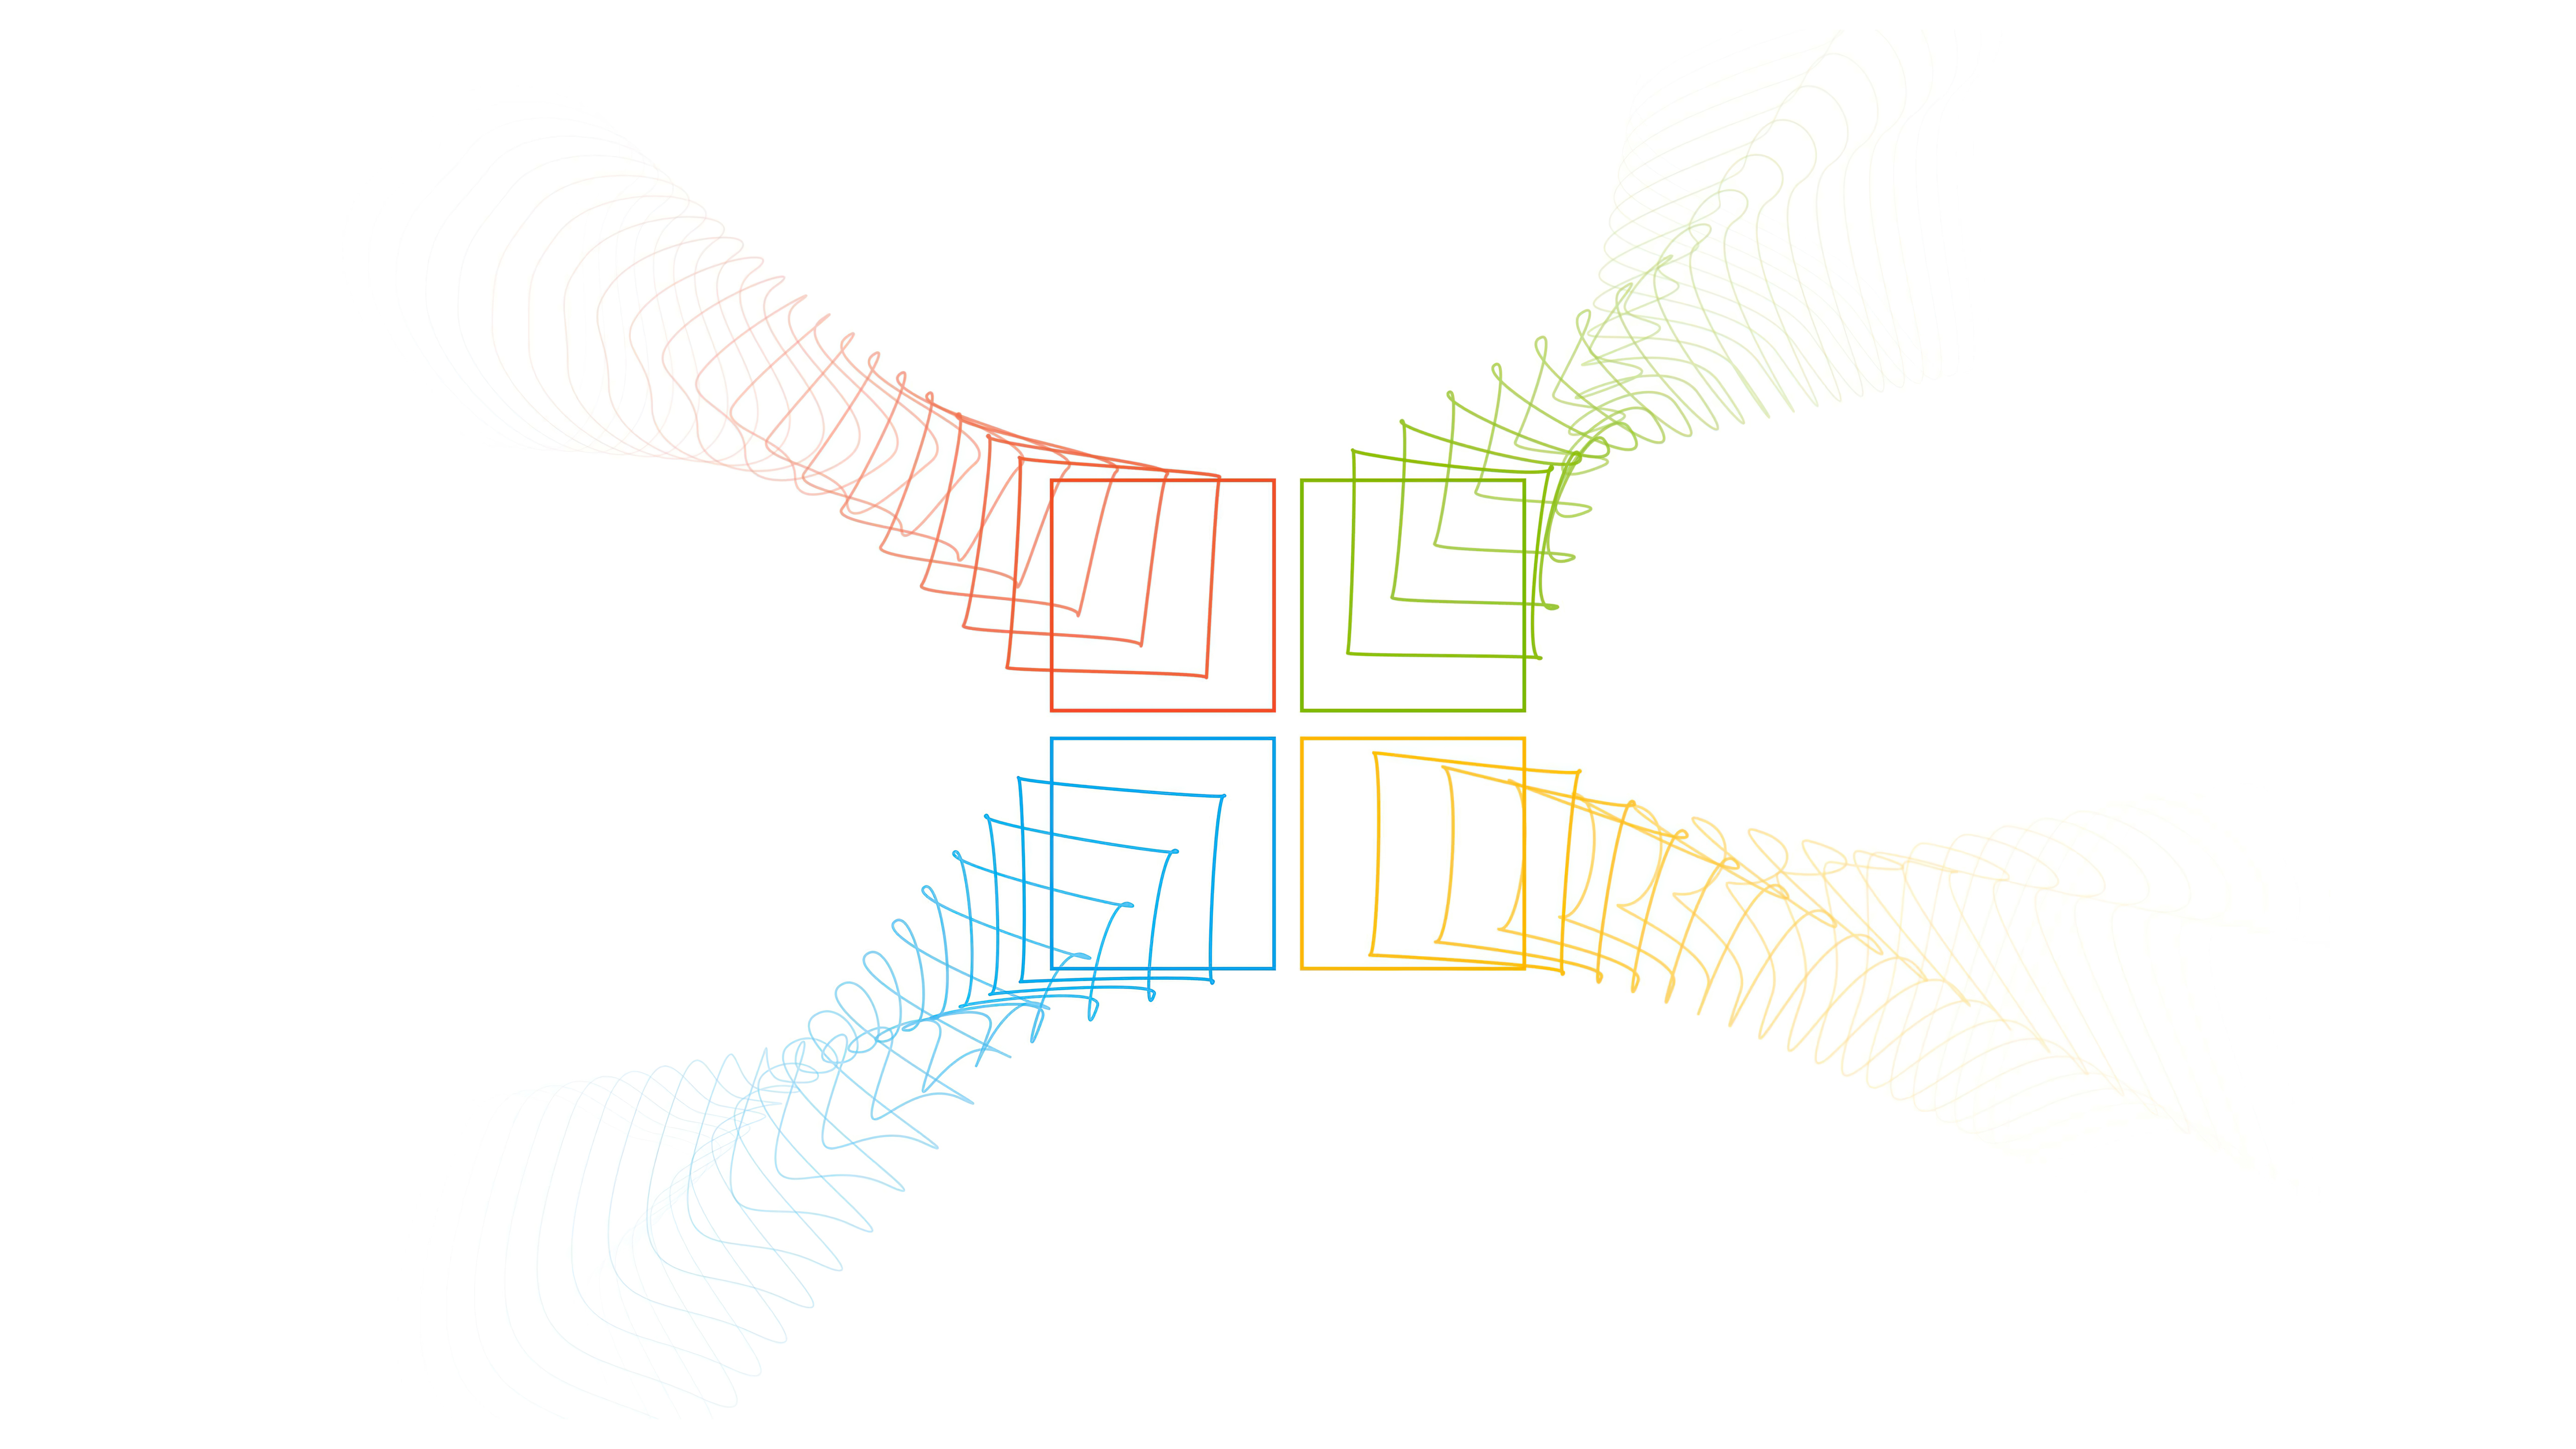 Стандартные обои с изображением логотипа Windows